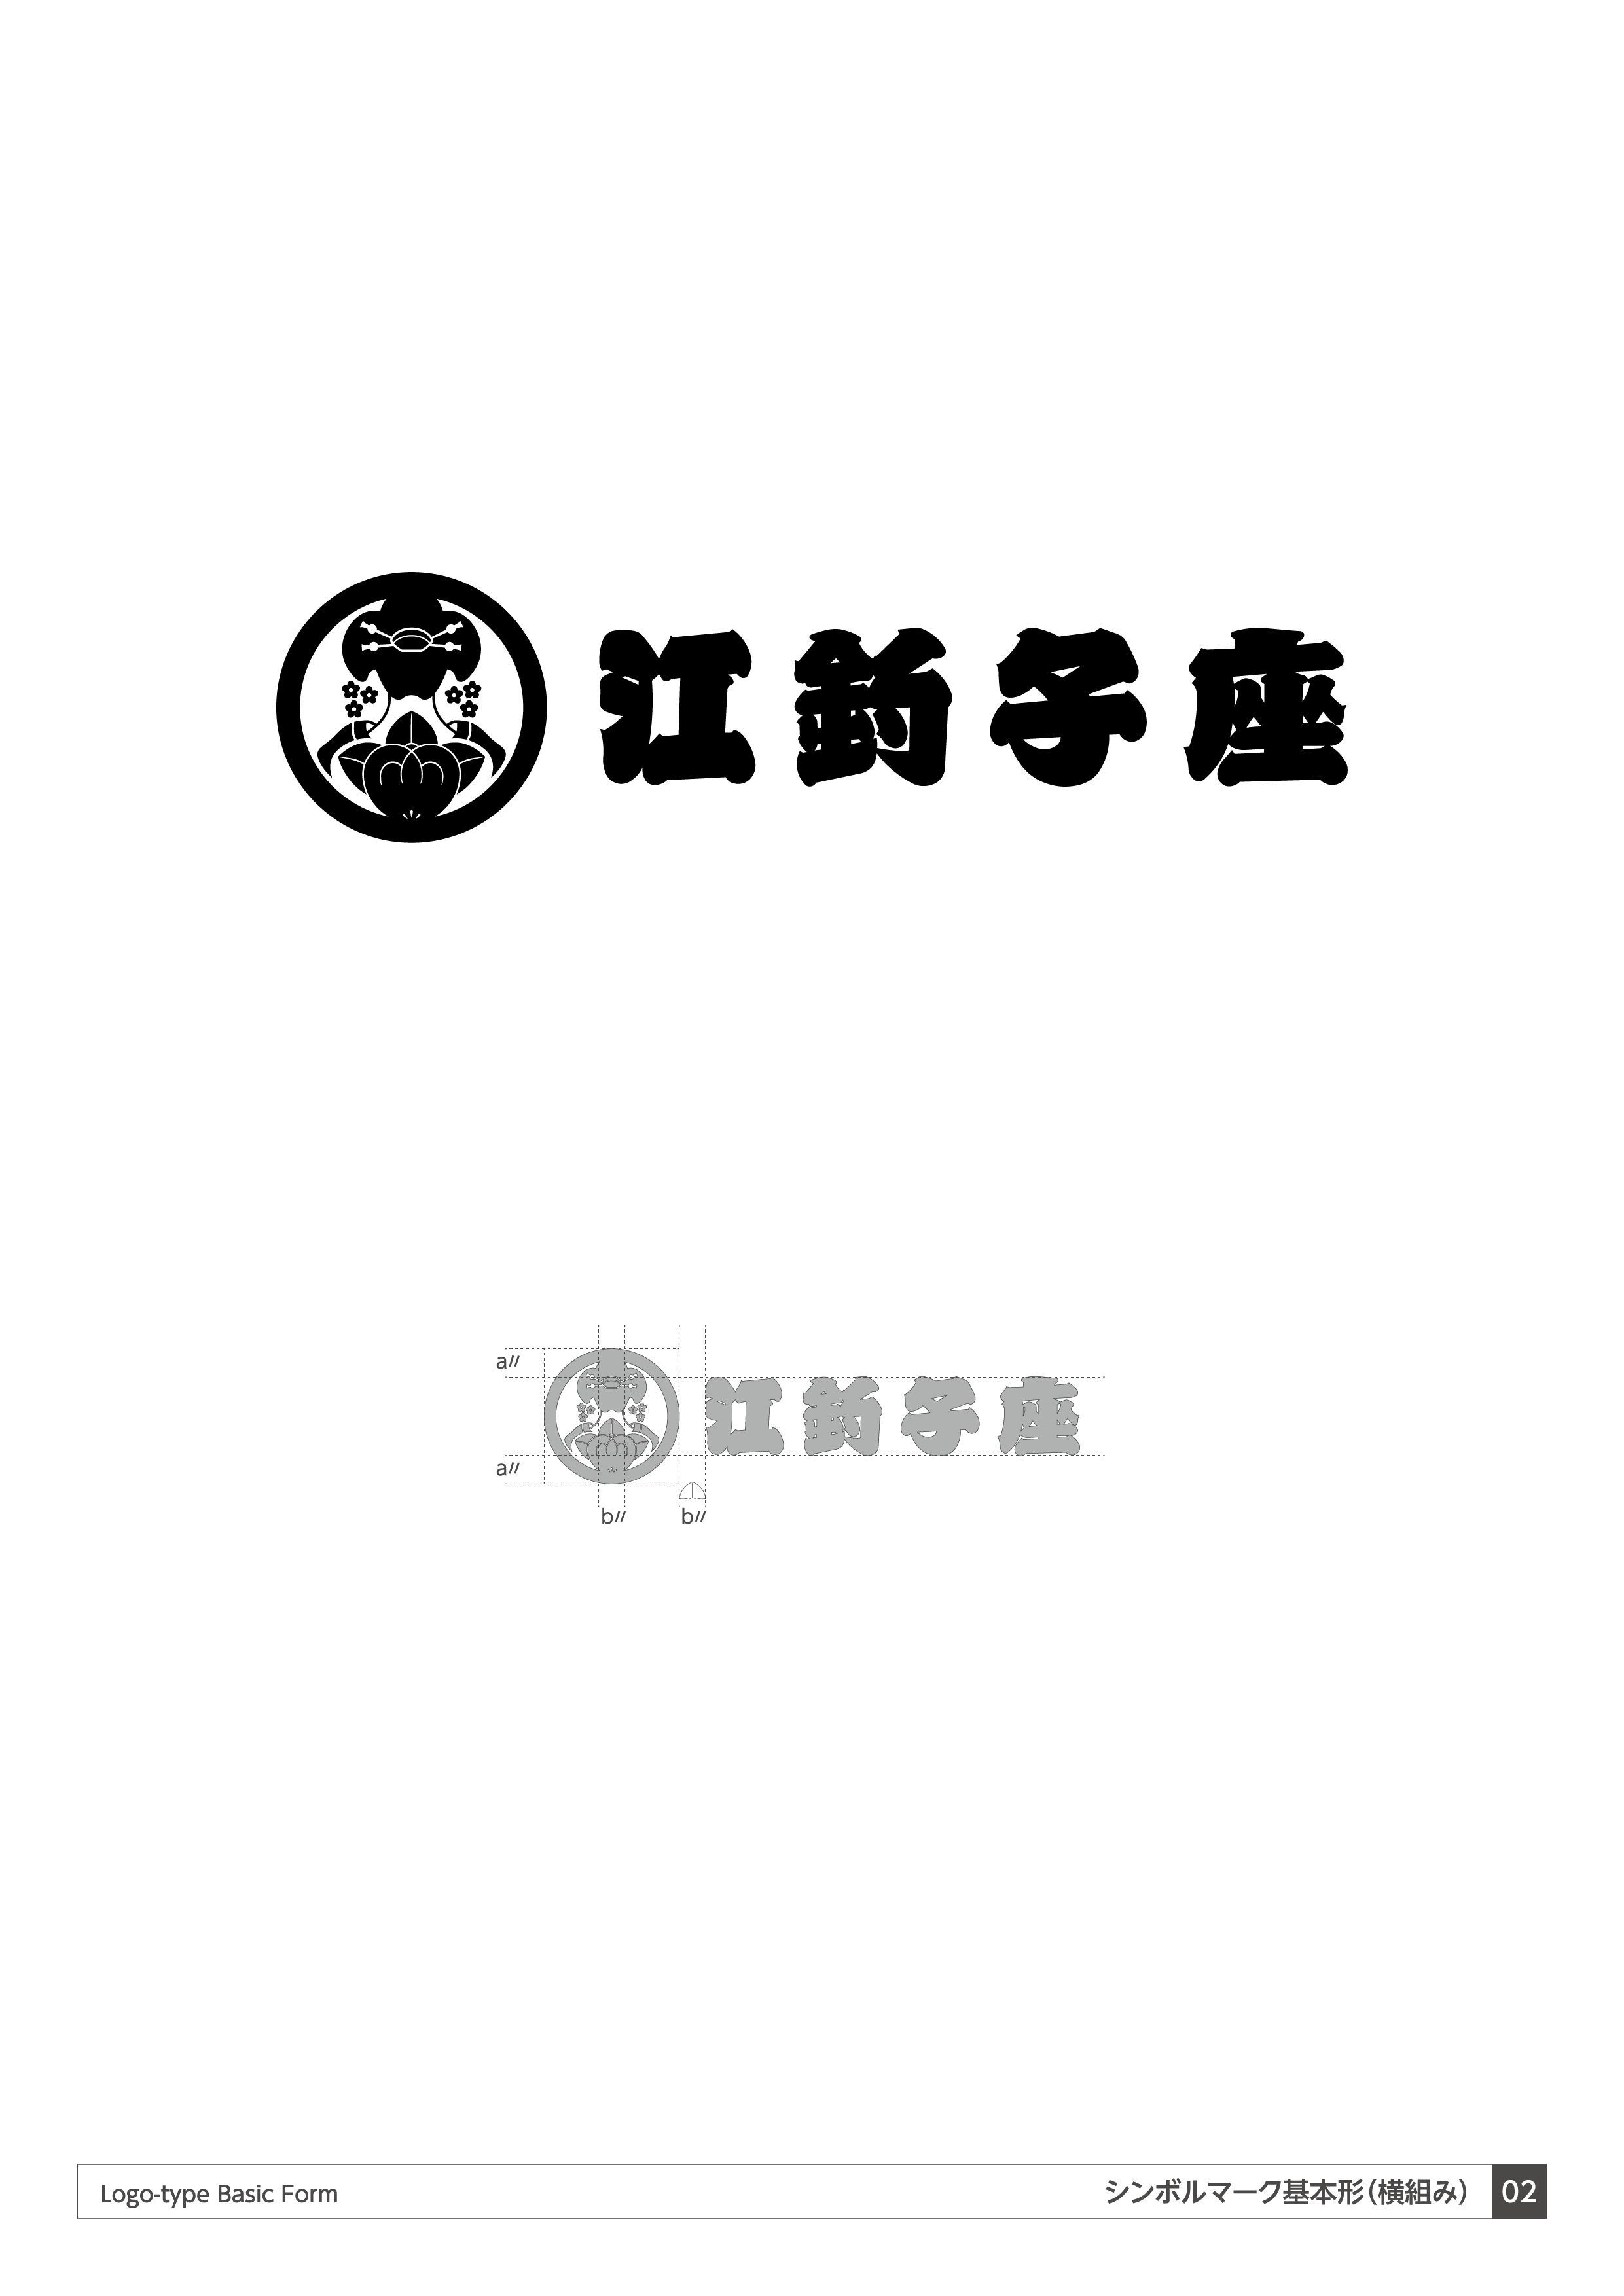 大衆演劇 江釣子座 シンボルマークデザイン04